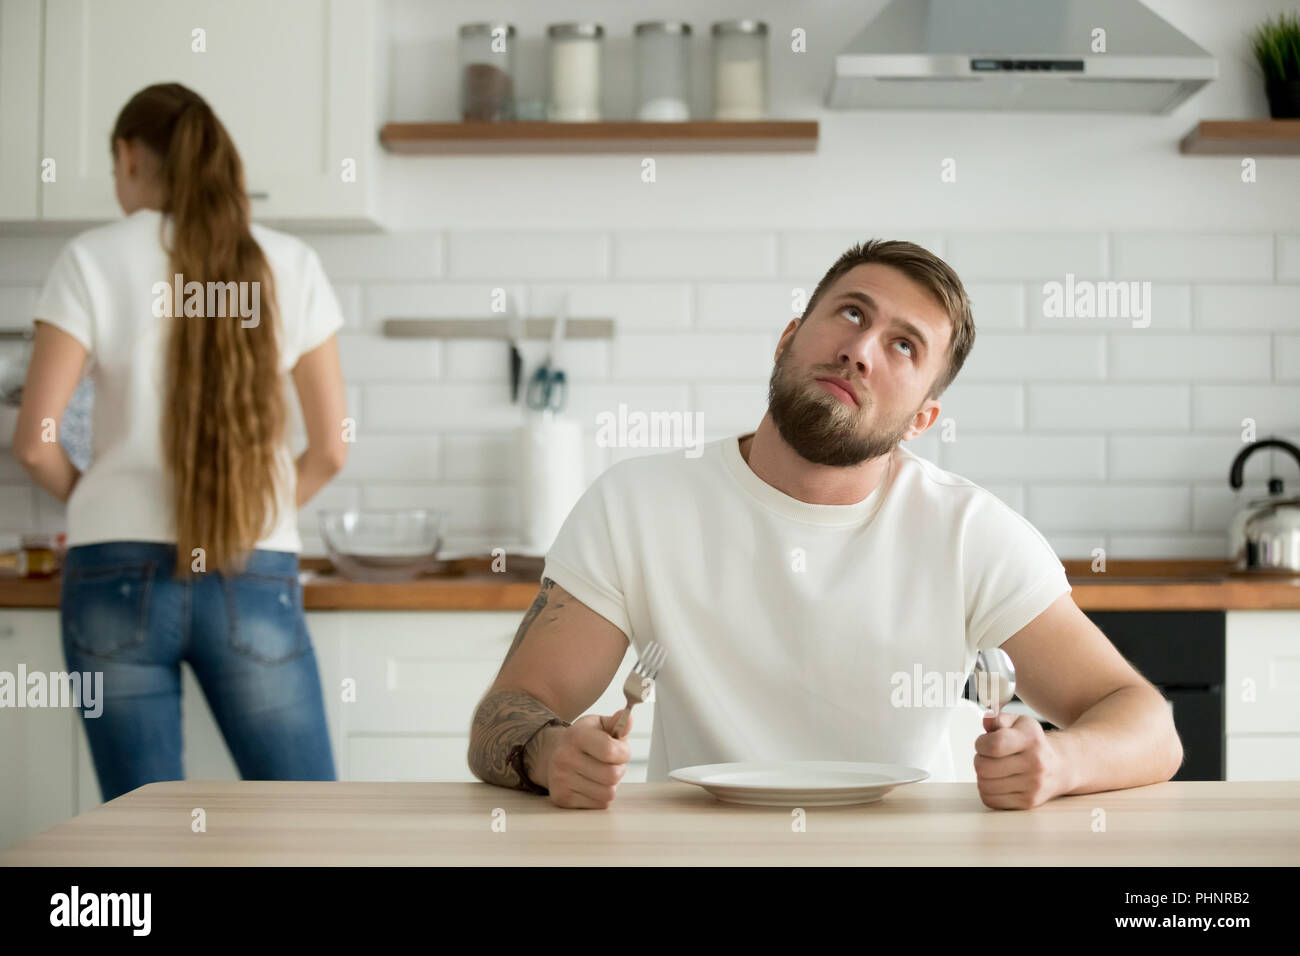 Perezoso marido aburrido en la cocina mientras espera para el desayuno Foto de stock